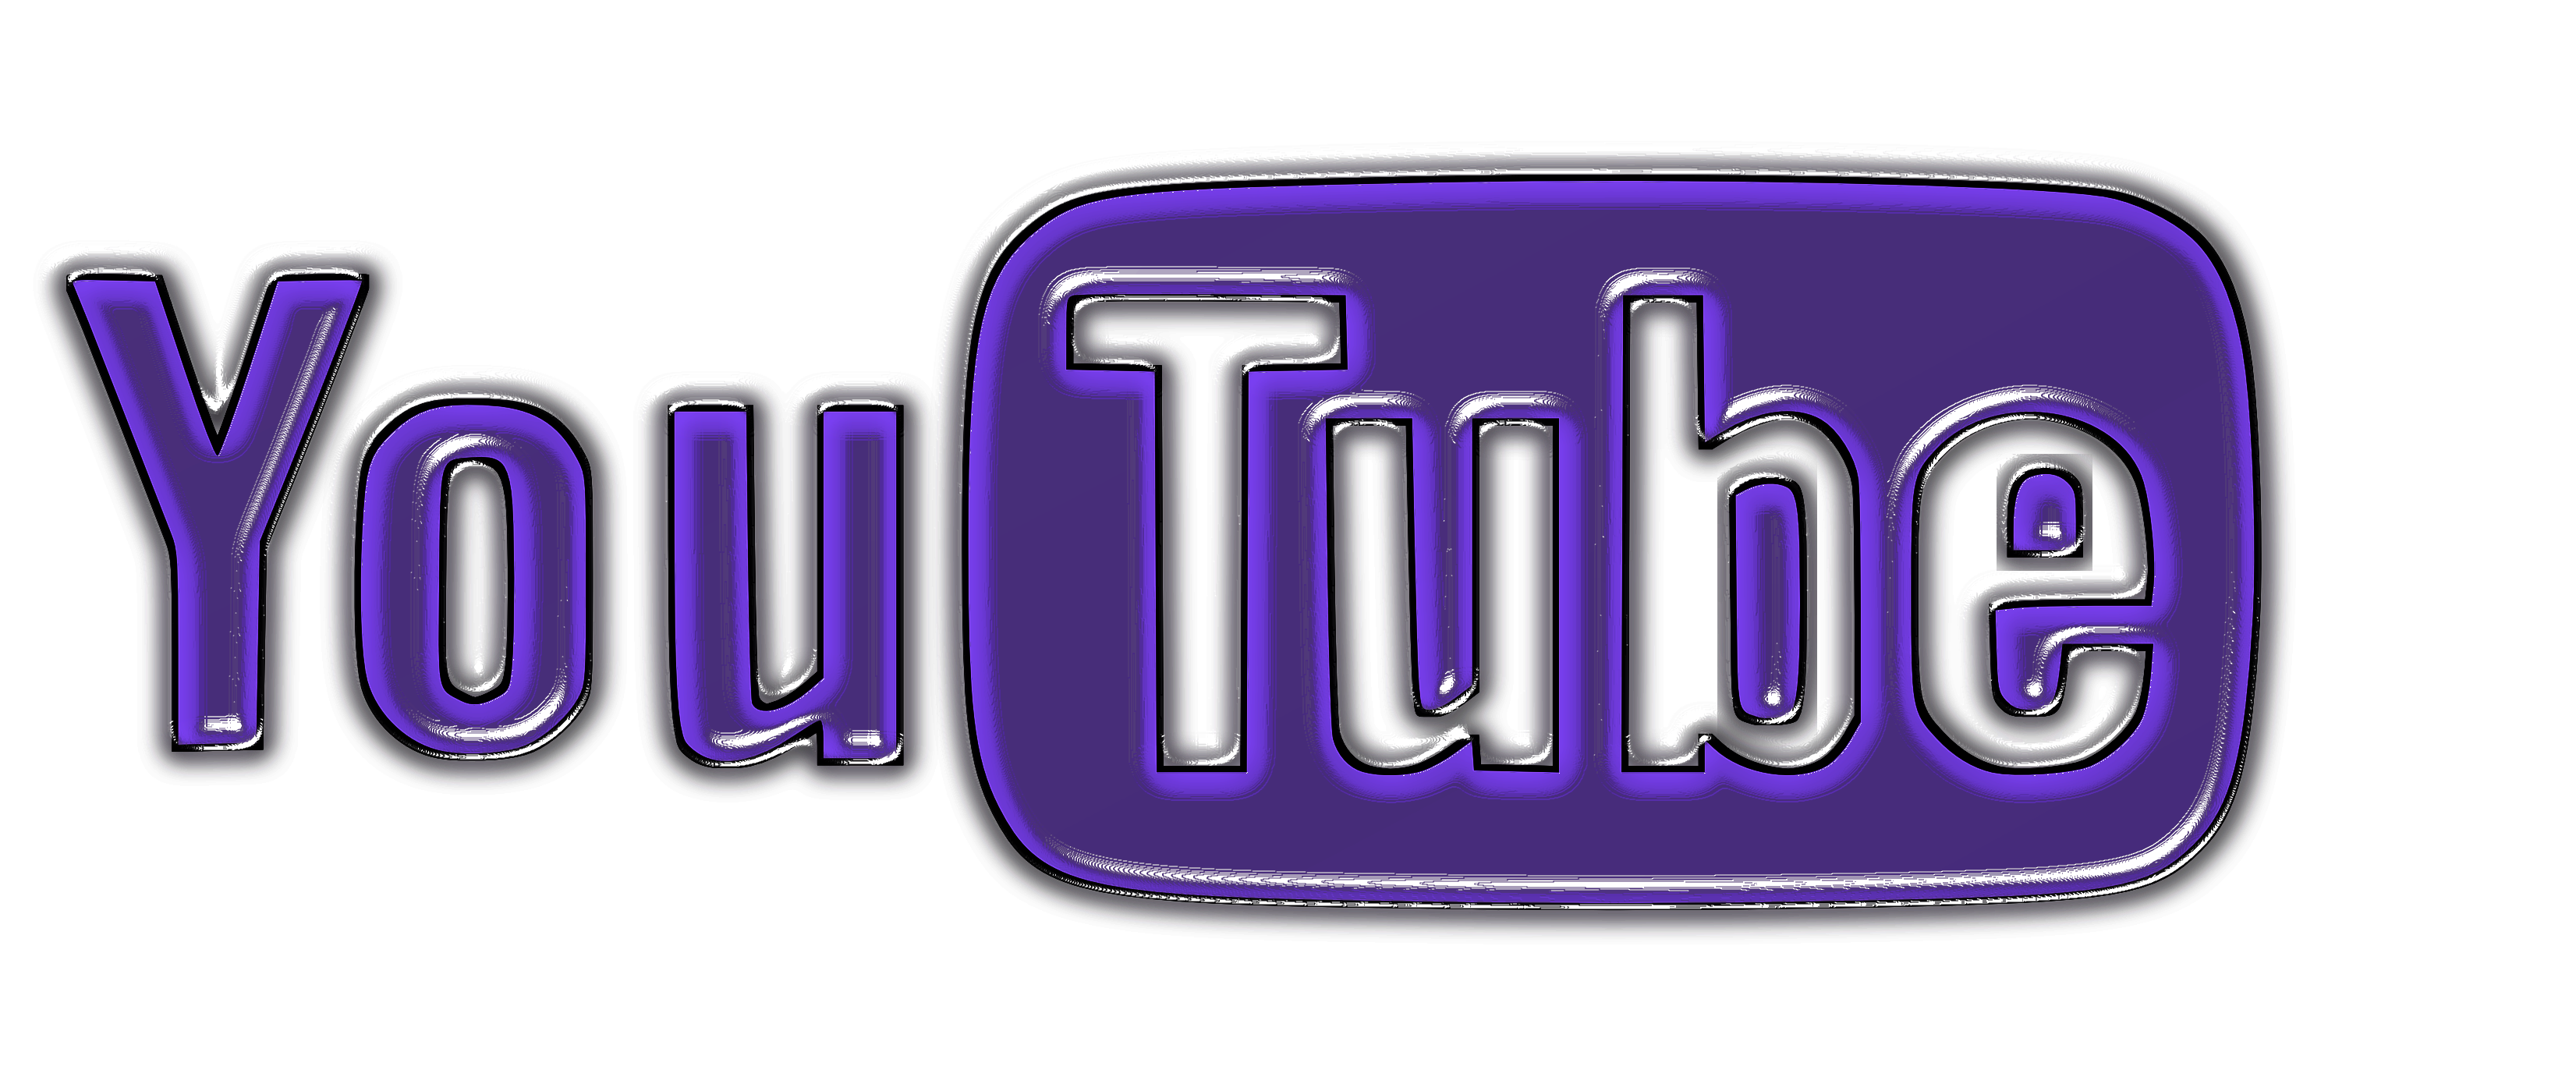 youtube free logo maker adobe spark